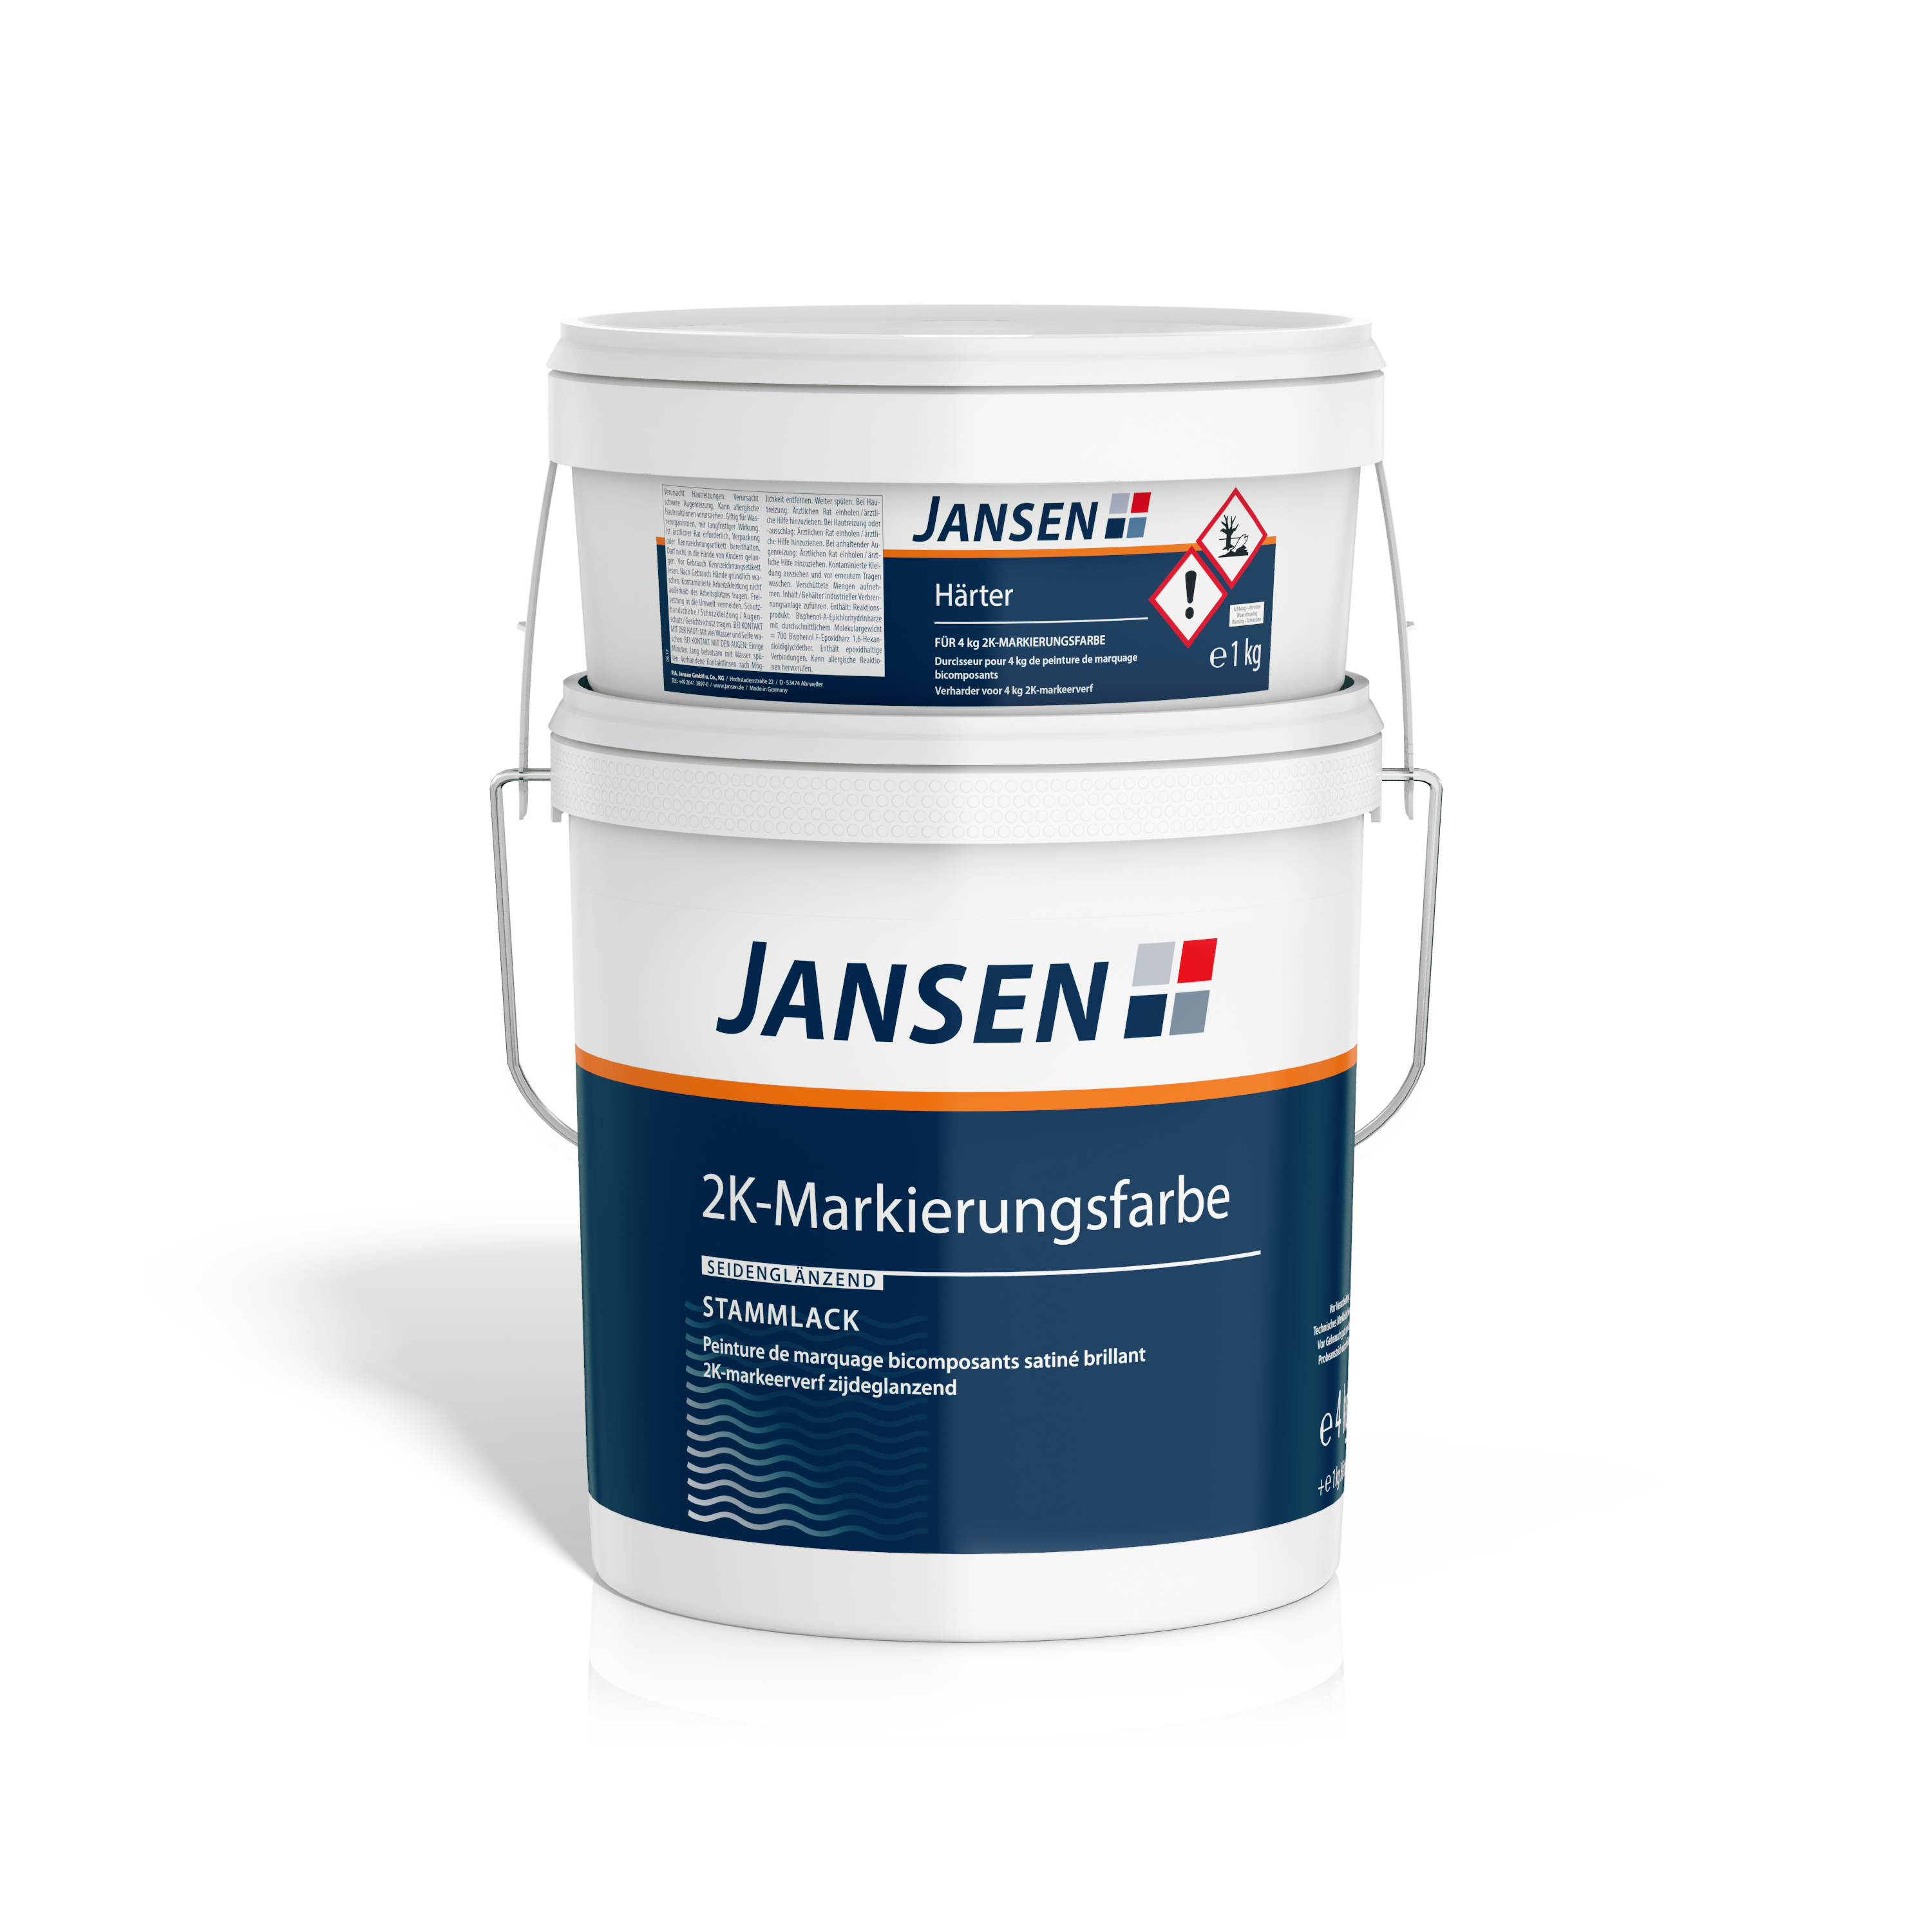 Jansen 2K-Markierungsfarbe